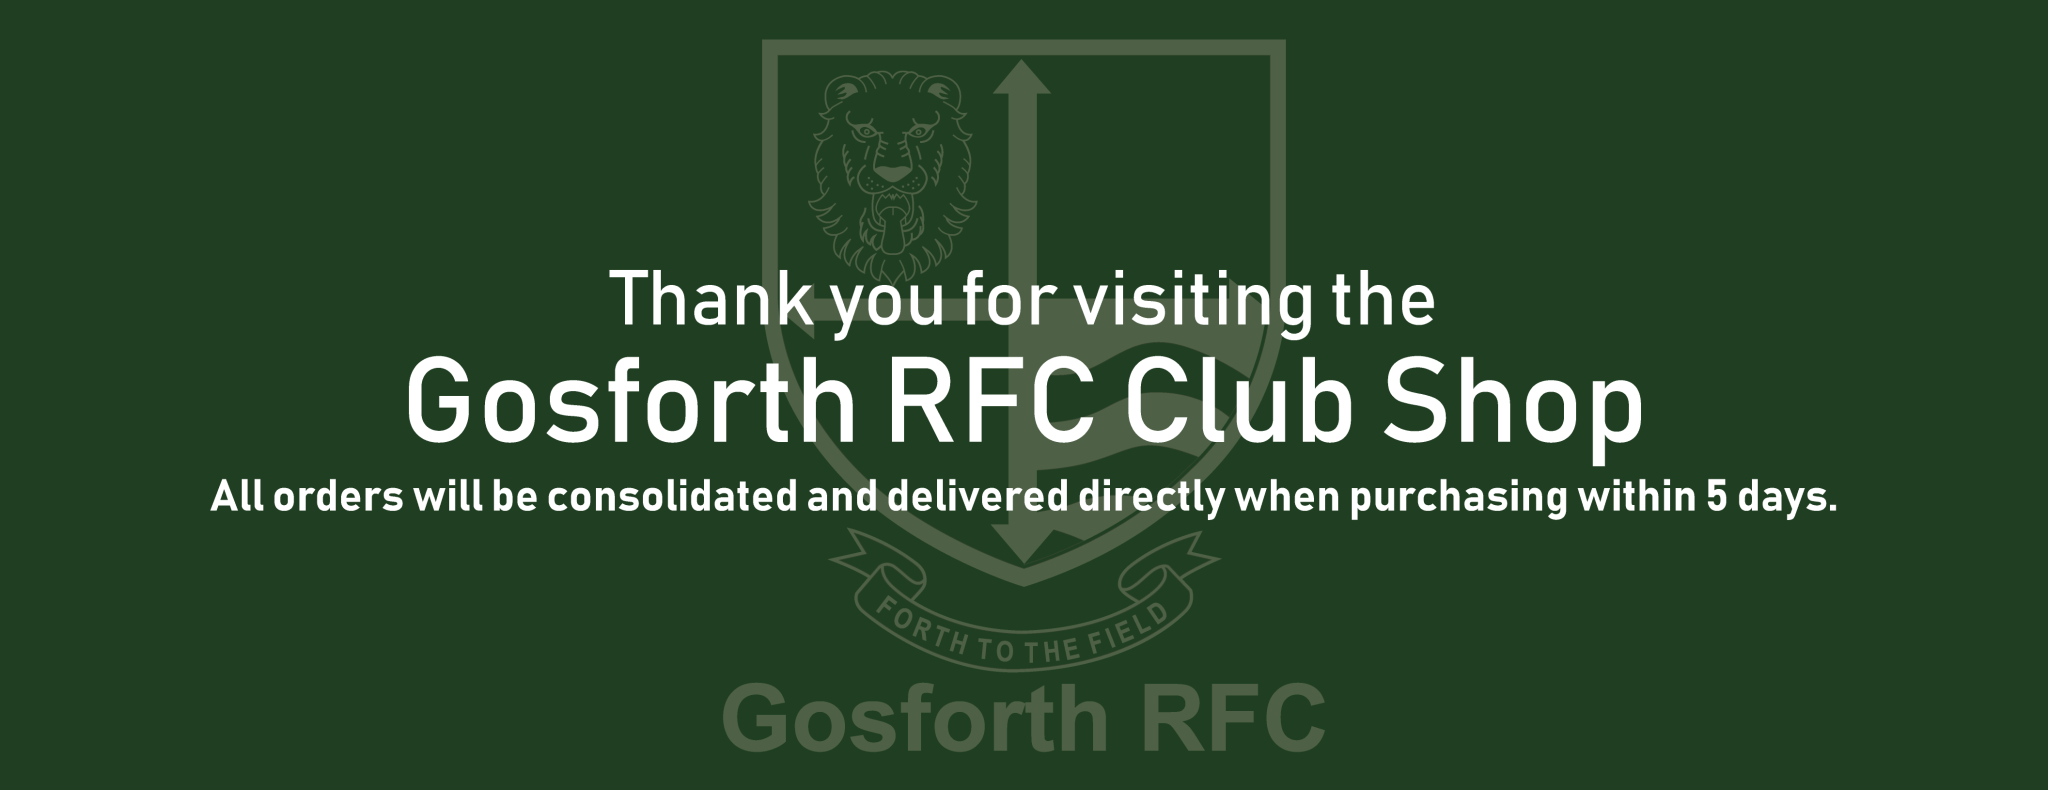 Gosforth RFC Club Shop